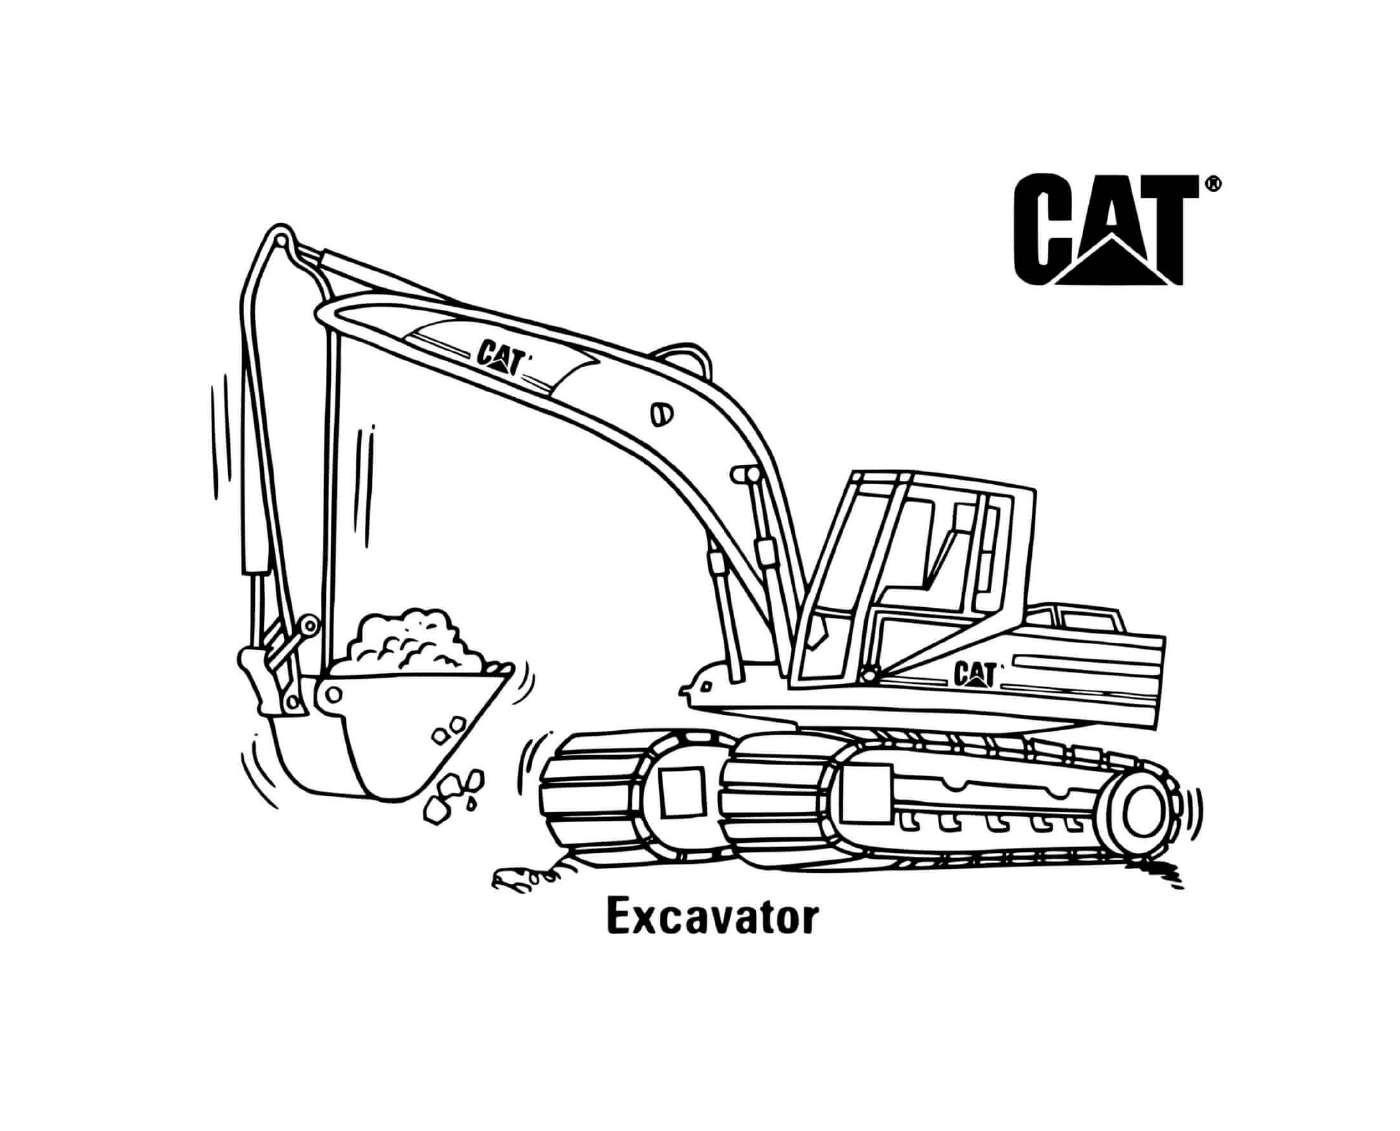   Camion-benne excavatrice CAT utilisé pour l'excavation 